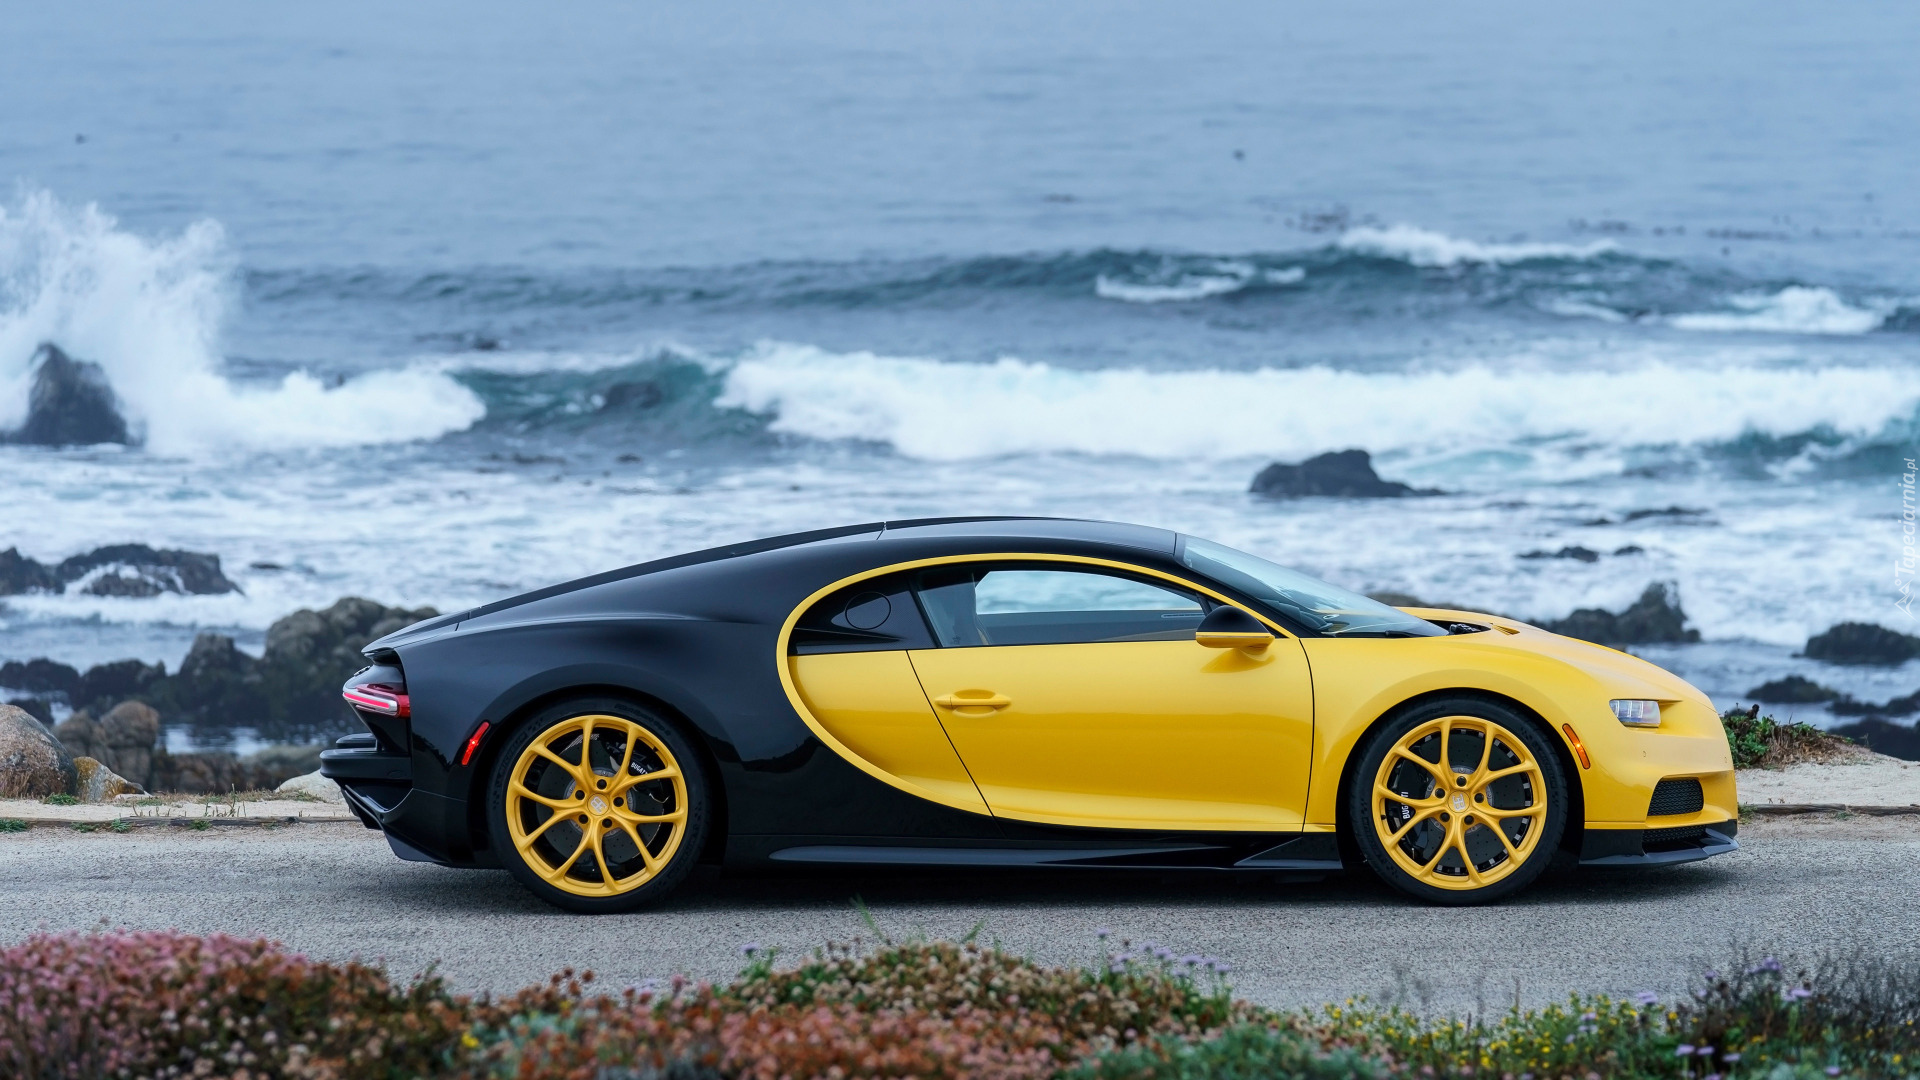 Wybrzeże, Bugatti Chiron, Żółto-czarny